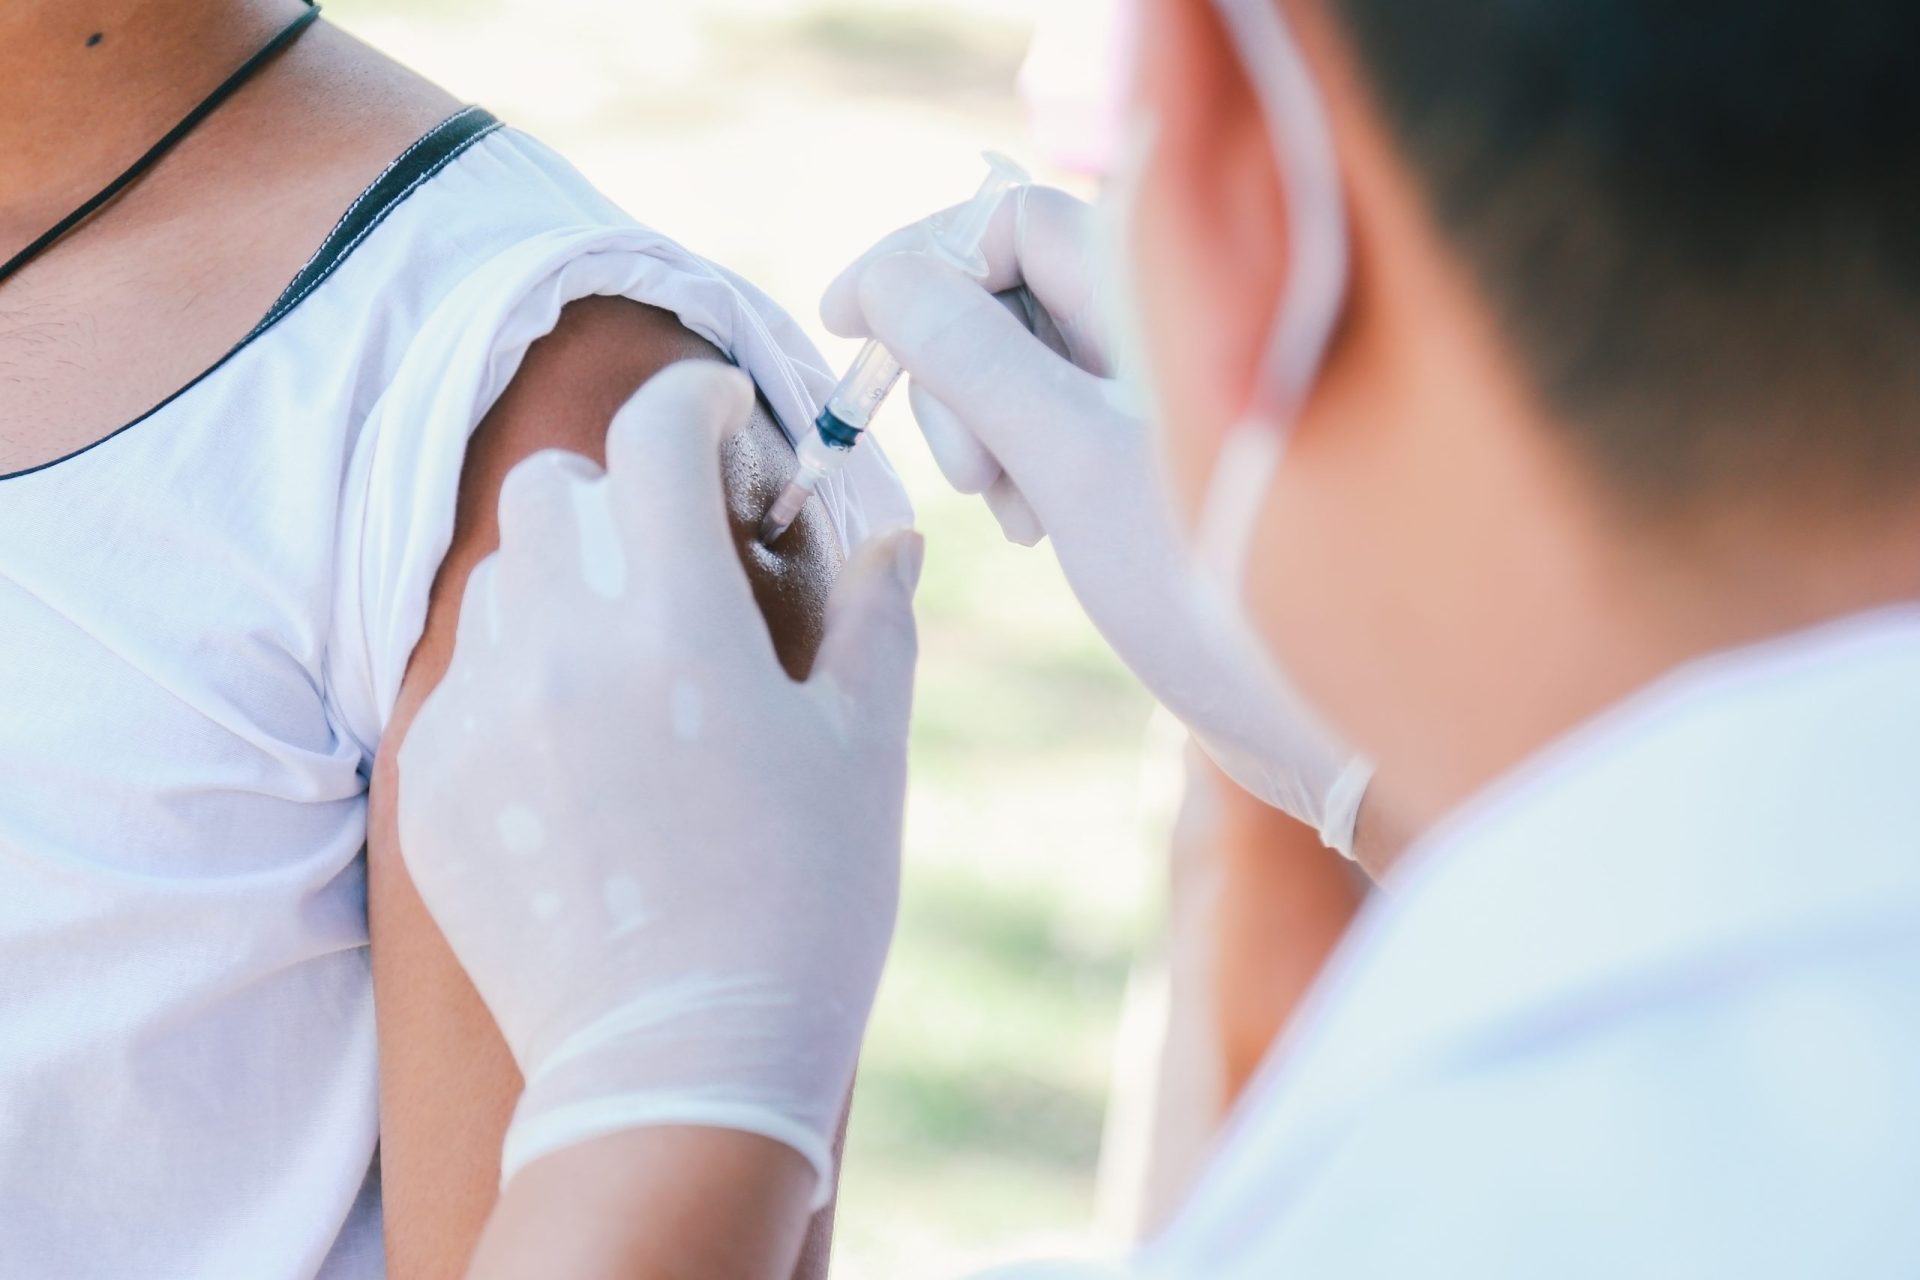 23 casos de sarampo. DGS alerta para necessidade de vacinação após caso grave em Cascais